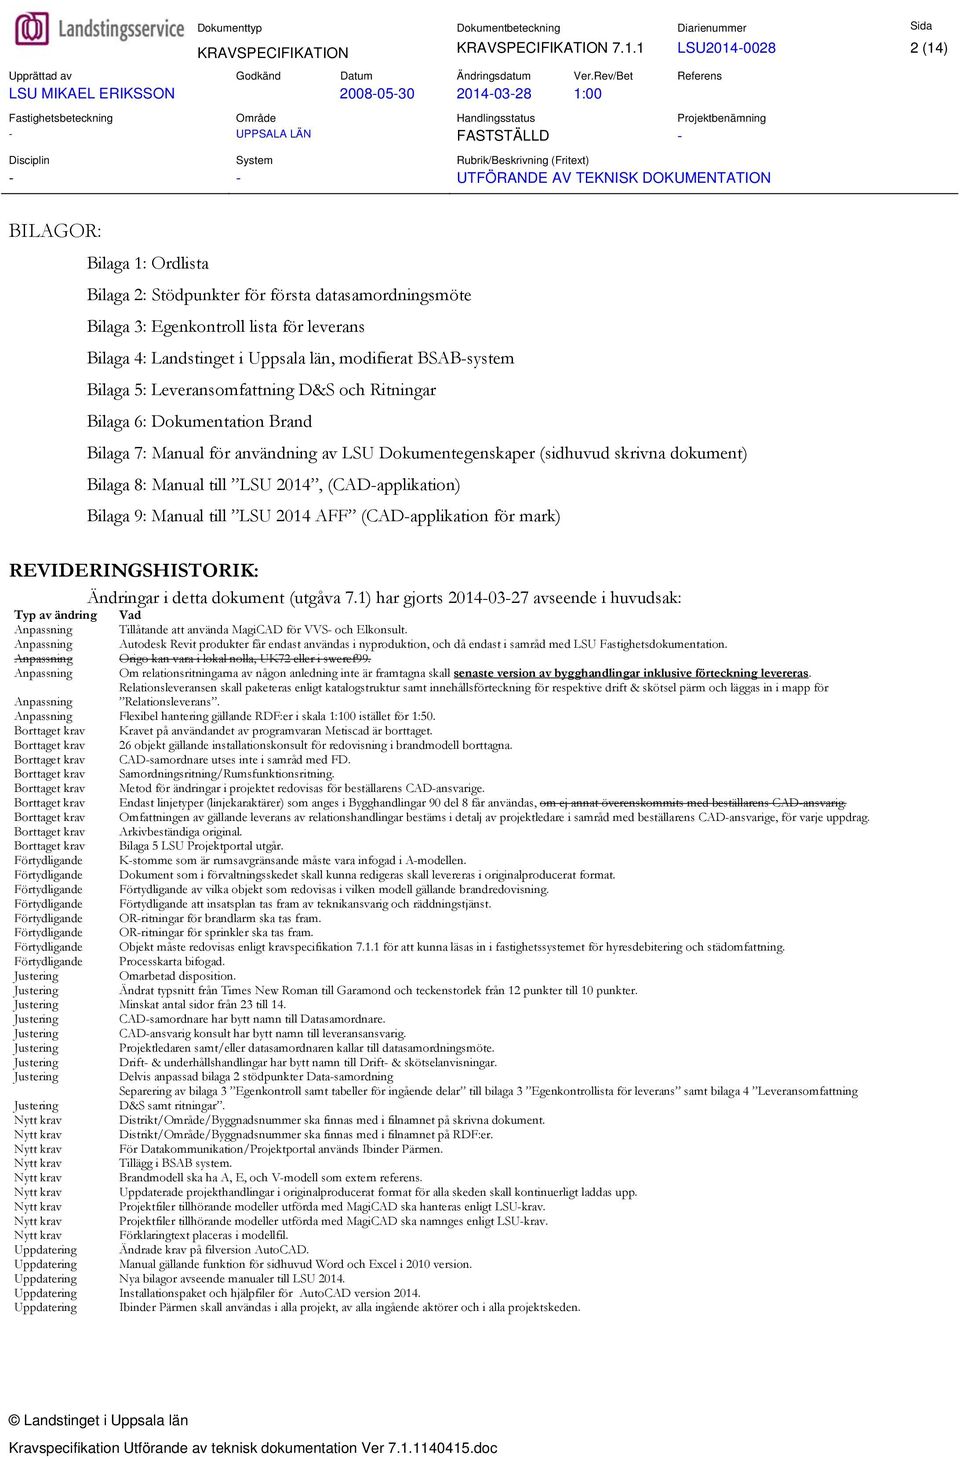 BSAB-system Bilaga 5: Leveransomfattning D&S och Ritningar Bilaga 6: Dokumentation Brand Bilaga 7: Manual för användning av LSU Dokumentegenskaper (sidhuvud skrivna dokument) Bilaga 8: Manual till